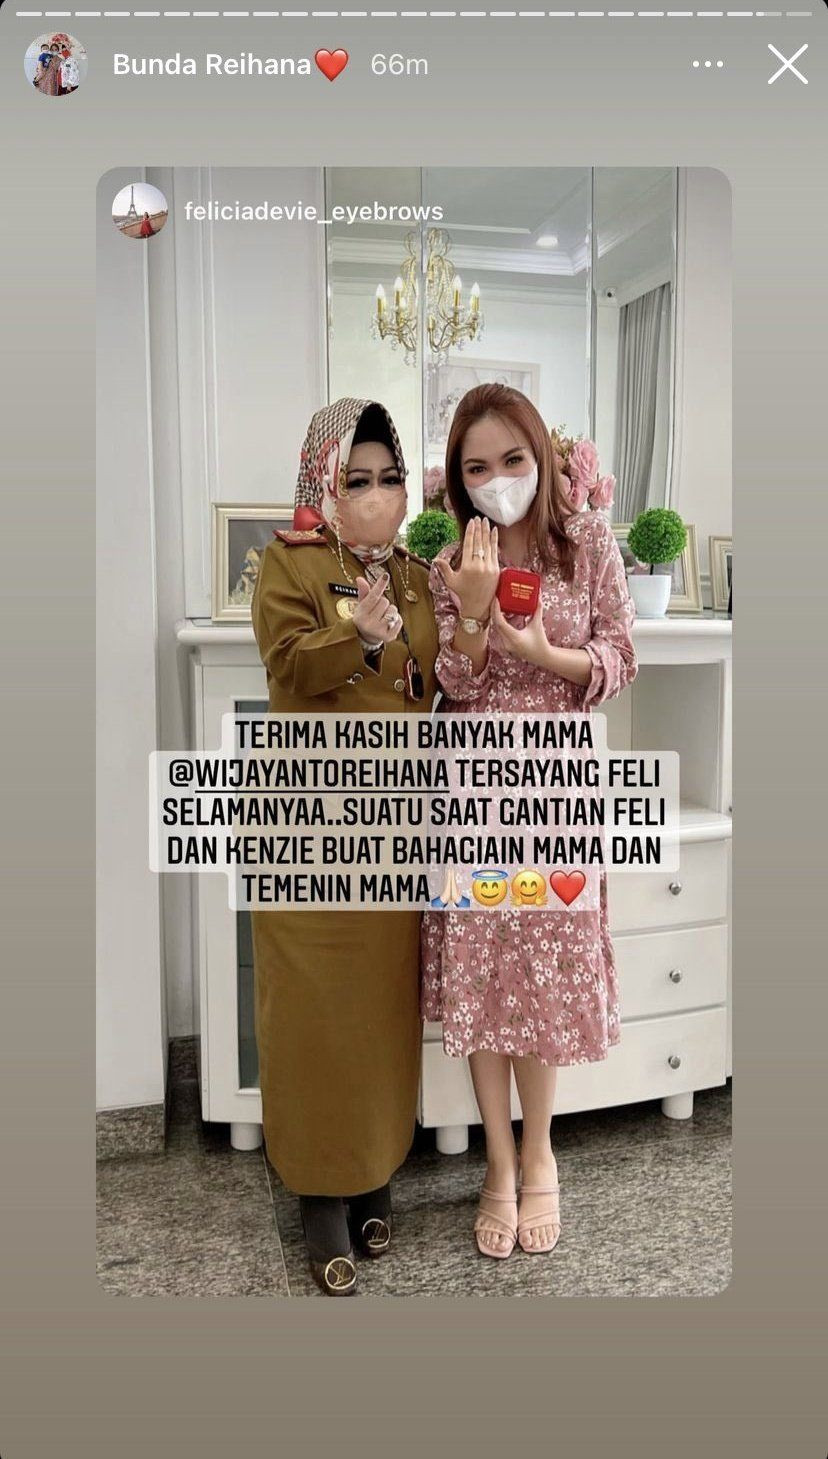 Viral! Kadiskes Lampung Pamer Barang Mewah, Gubernur: Tolong Dimaafkan